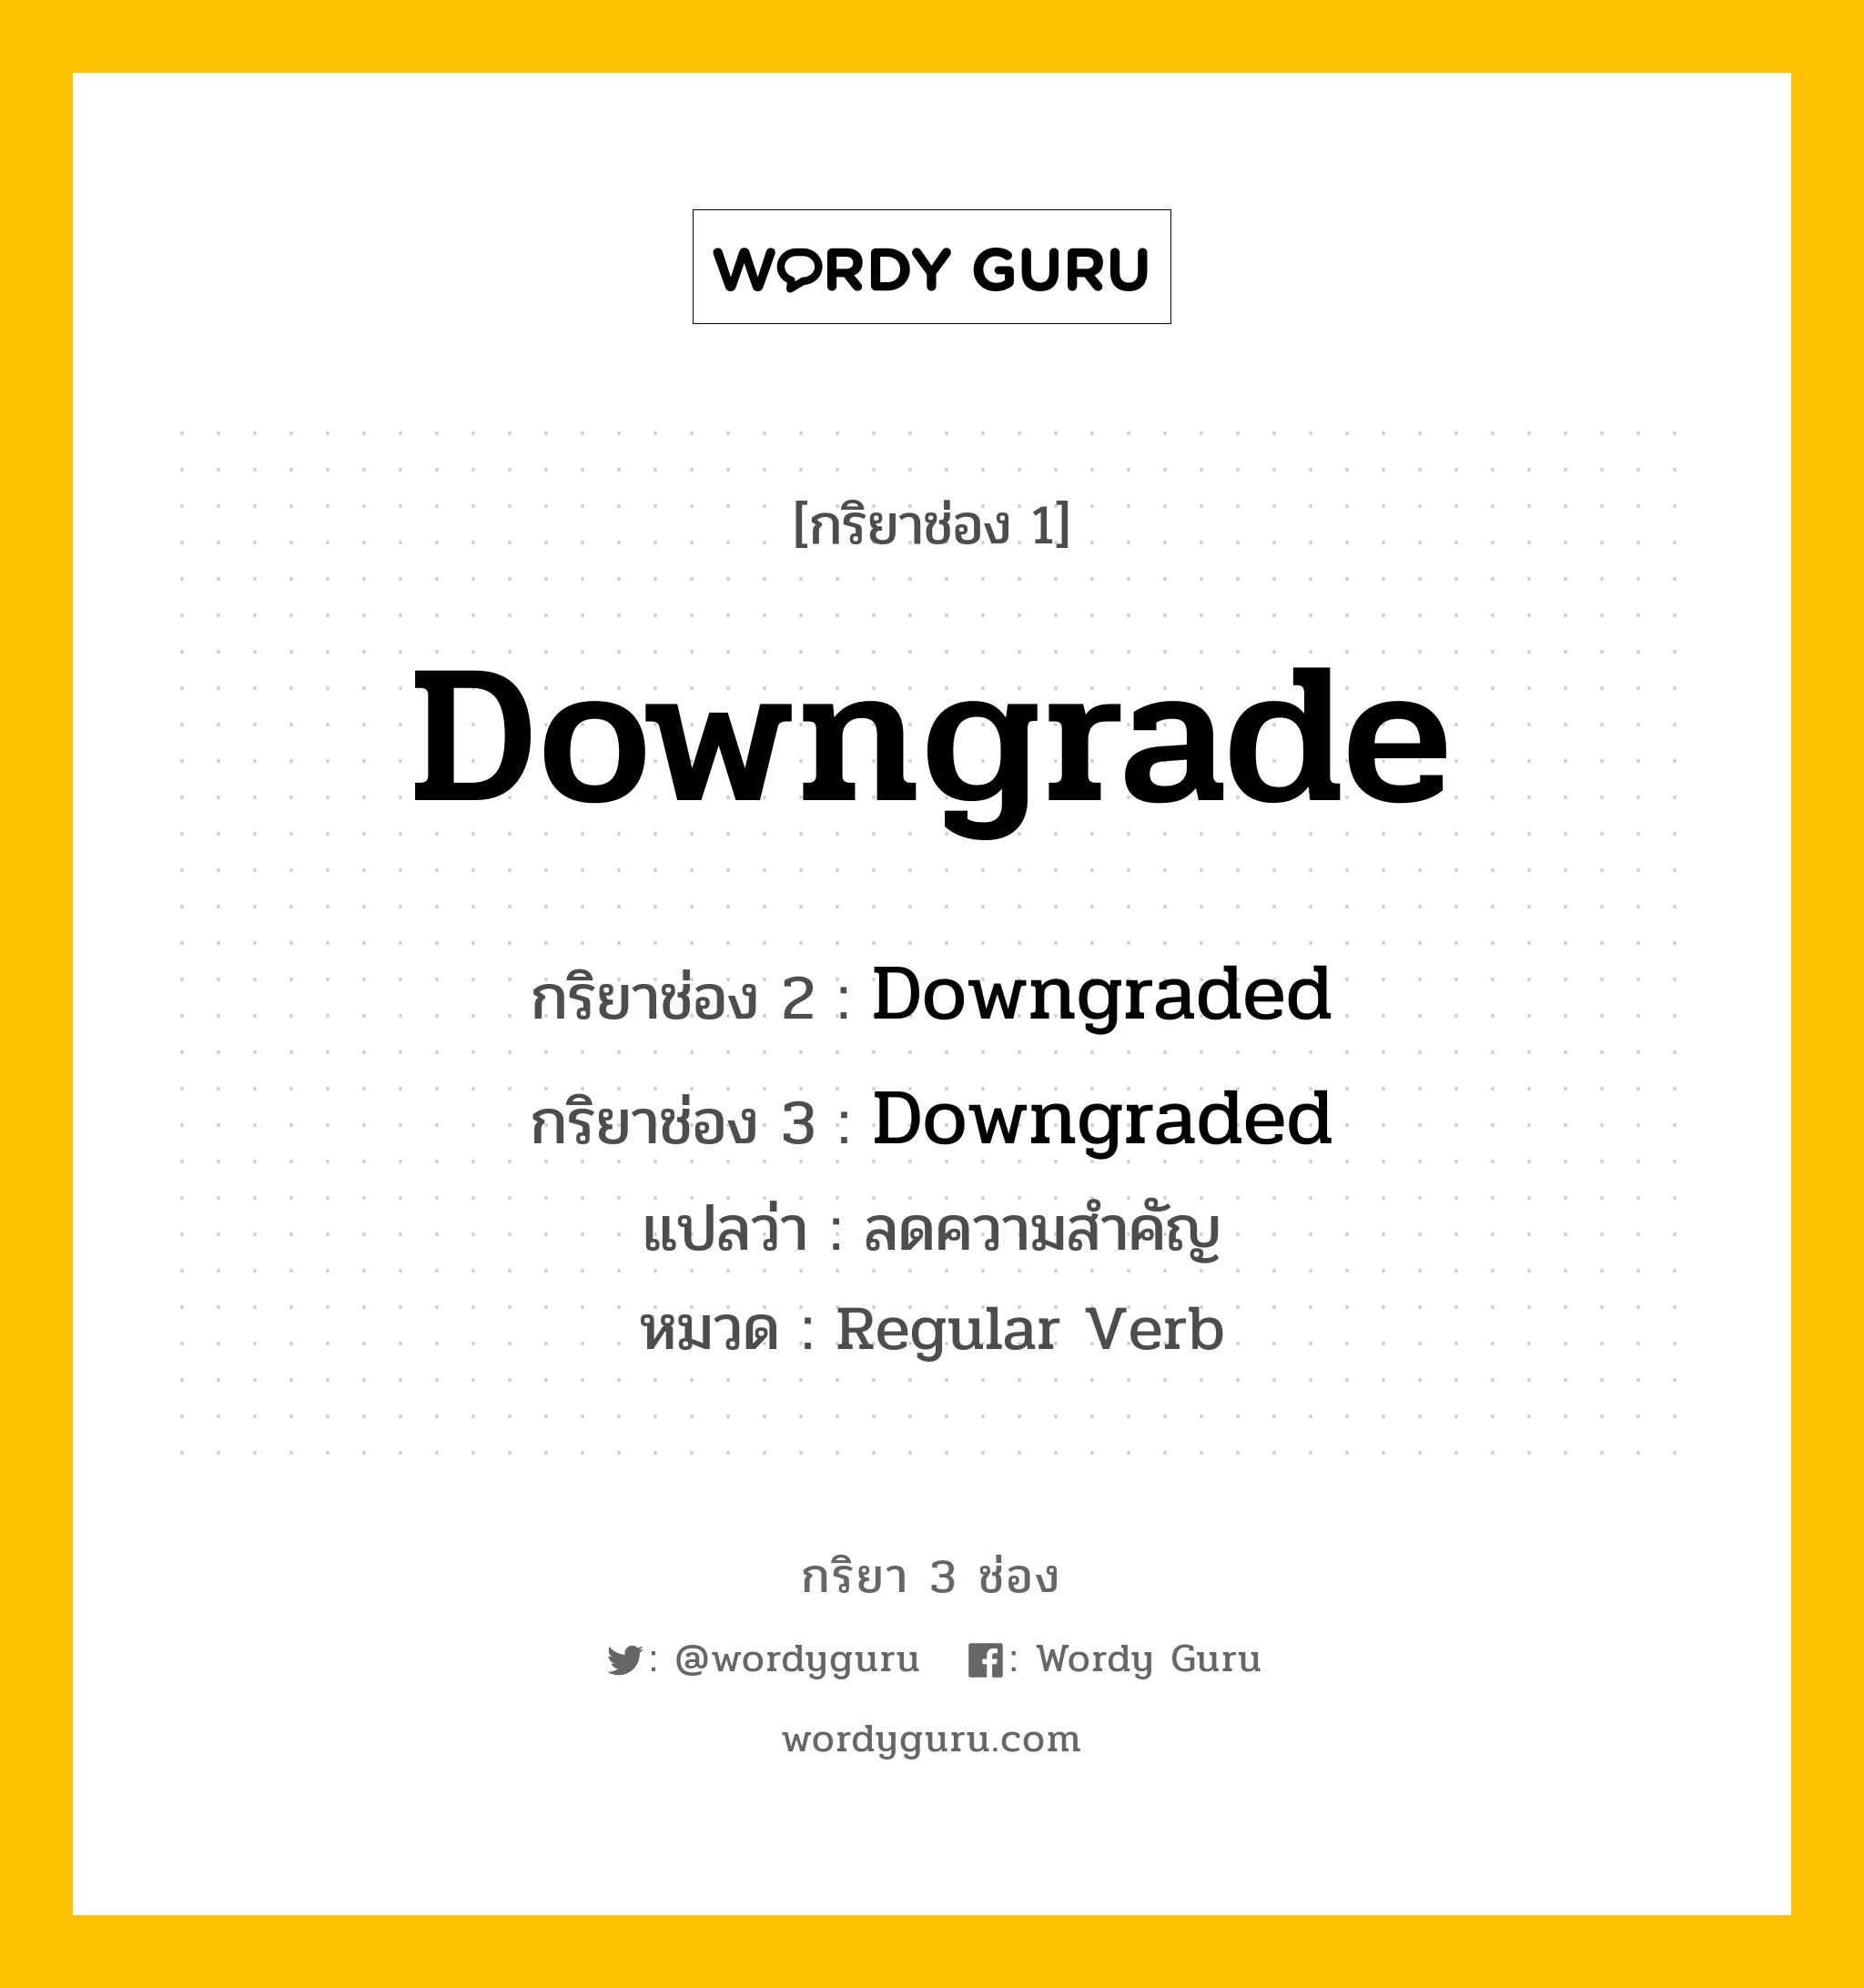 Downgrade มีกริยา 3 ช่องอะไรบ้าง? คำศัพท์ในกลุ่มประเภท Regular Verb, กริยาช่อง 1 Downgrade กริยาช่อง 2 Downgraded กริยาช่อง 3 Downgraded แปลว่า ลดความสำคัญ หมวด Regular Verb หมวด Regular Verb